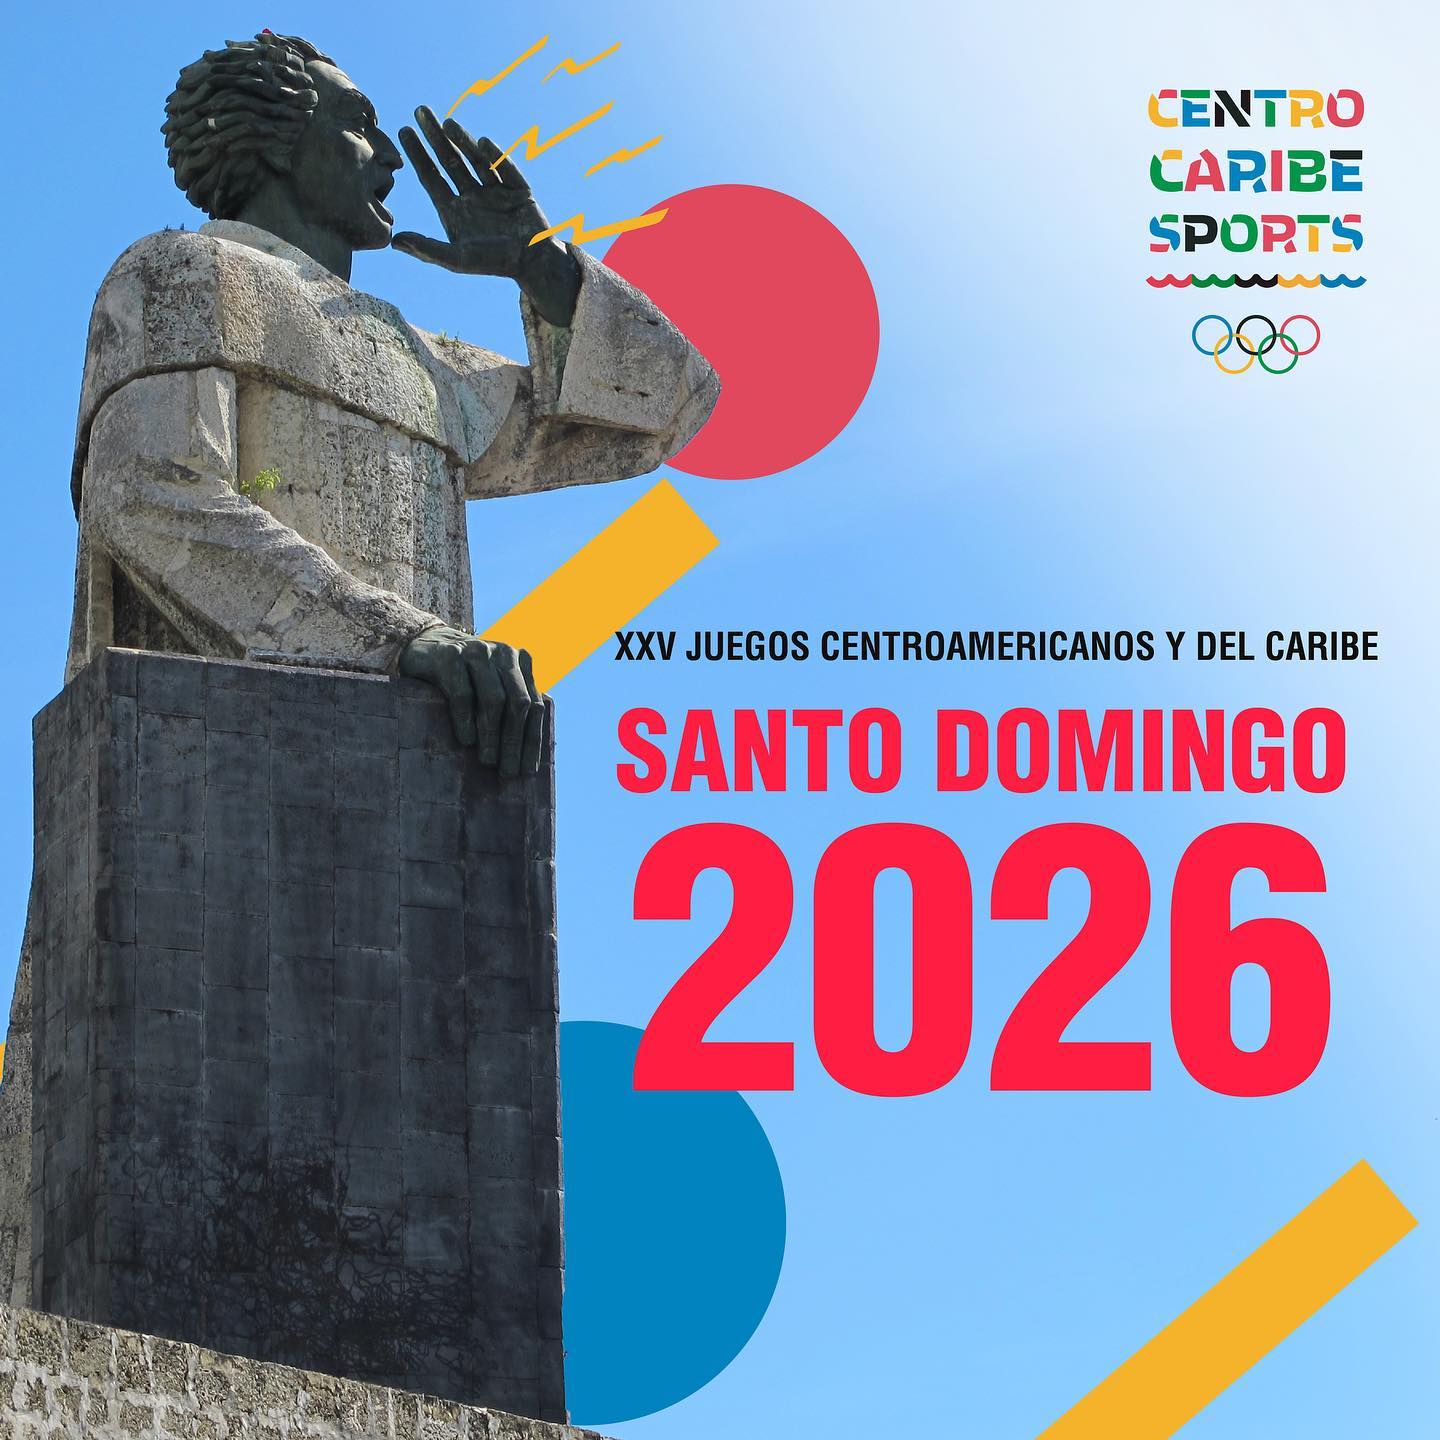 Juegos Centroamericanos y del Caribe 2026 serán en Santo Domingo